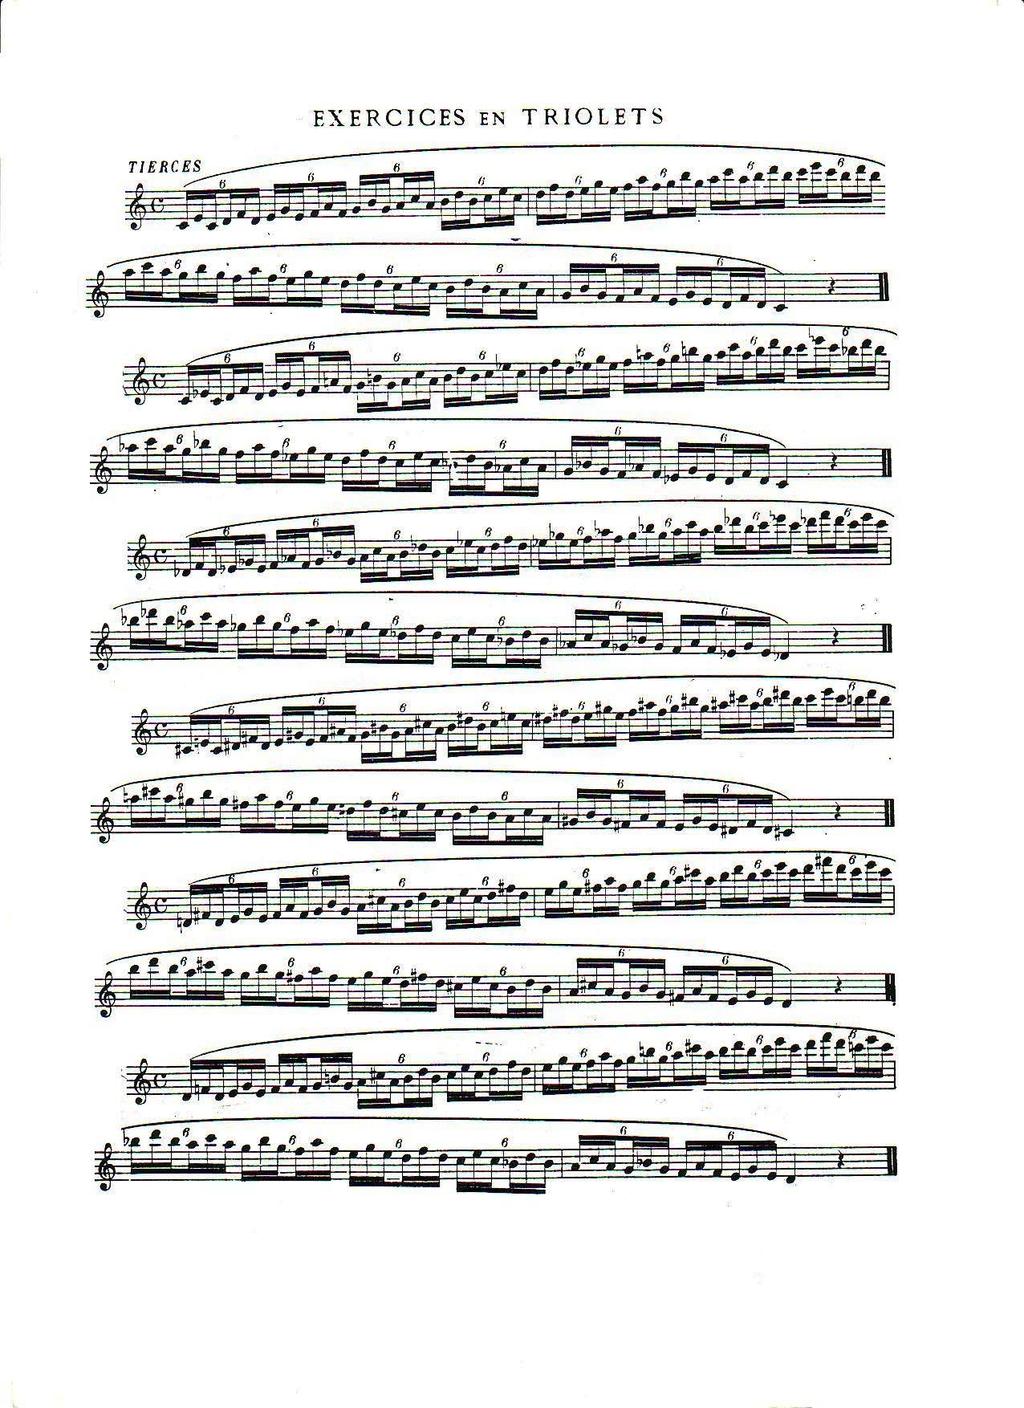 74 Dil çalışması: Mozart ın flüt konçertosundaki aşağıdaki